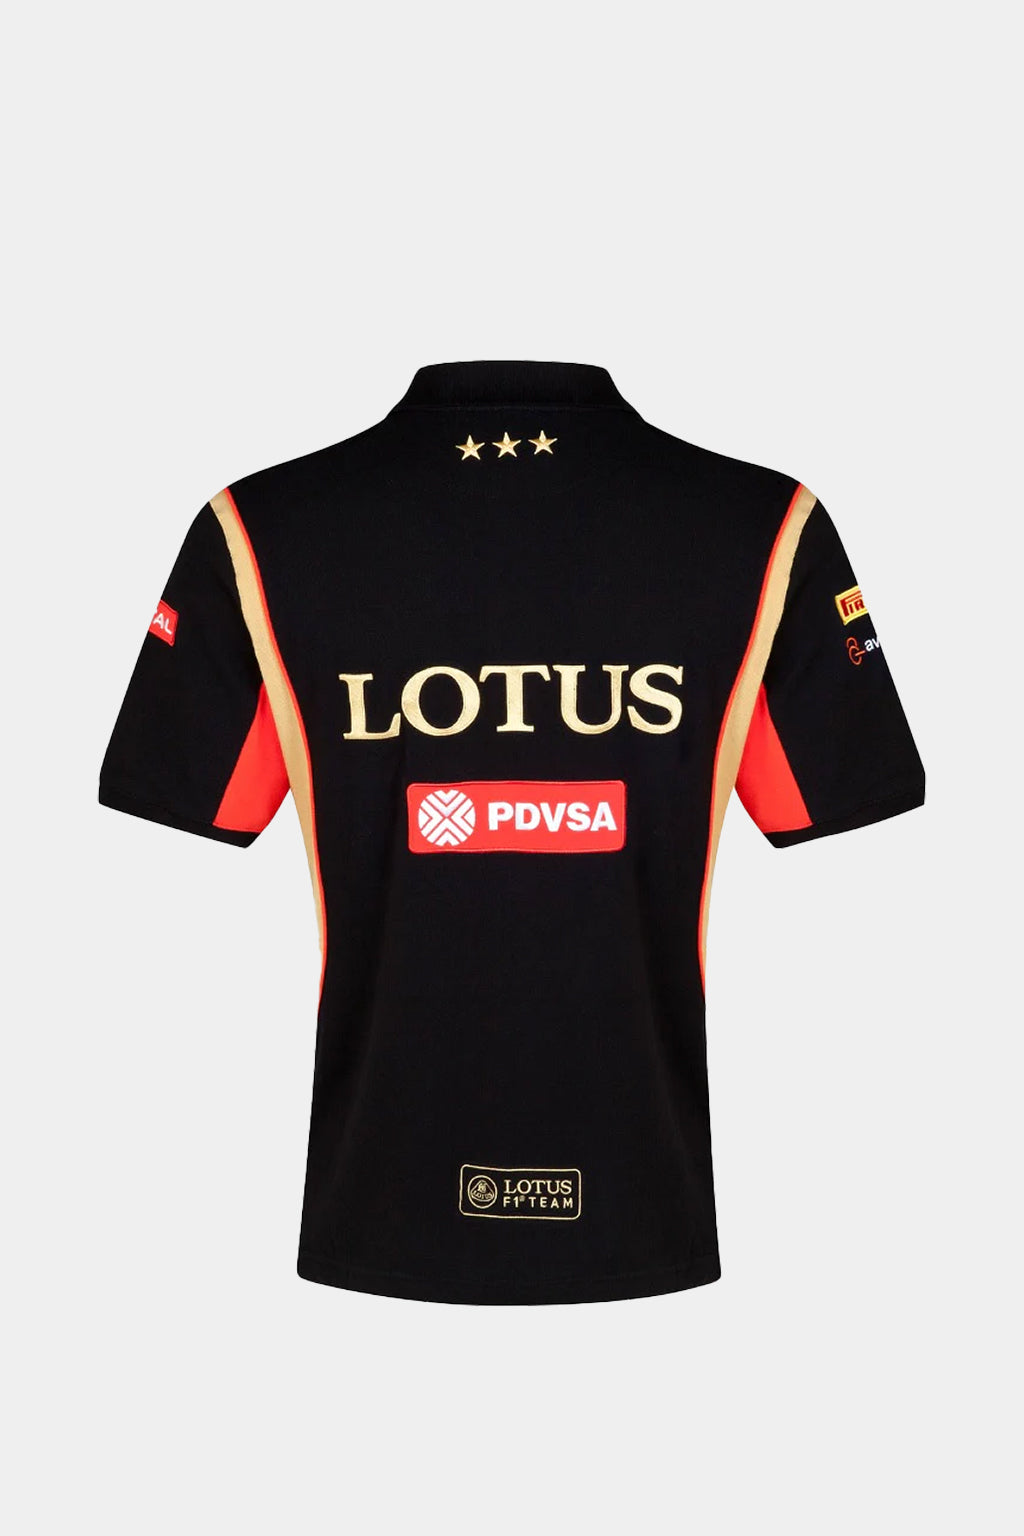 Lotus F1 Team Replica - Polo Shirt